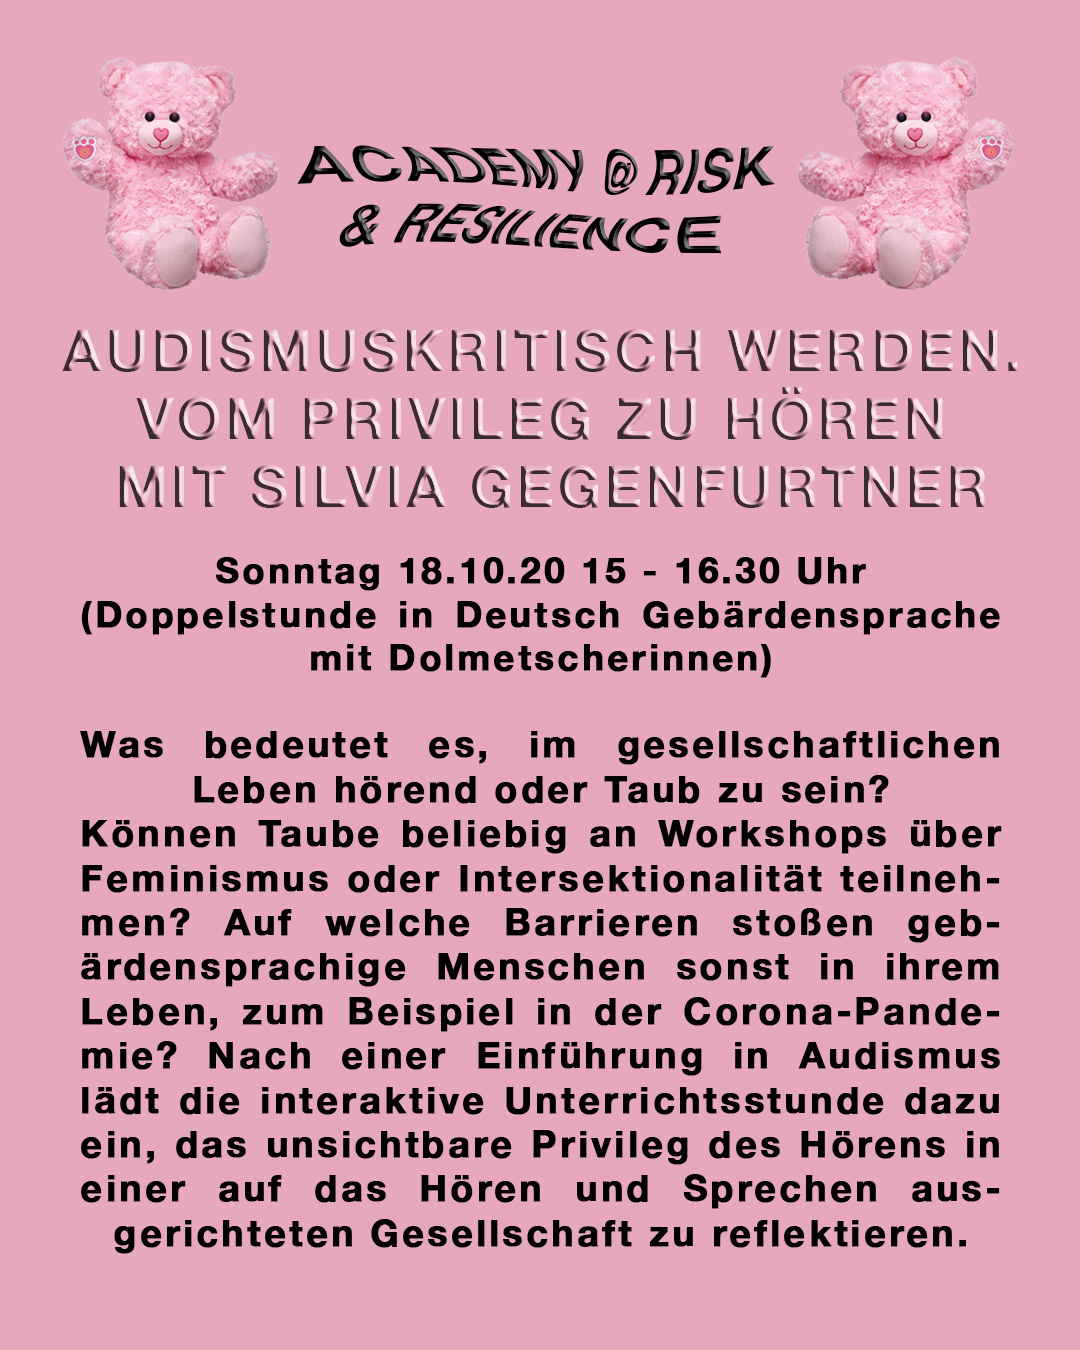 Beschreibungstext des Workshops auf rosa Hintergrund im Design der "Academy - die feministische Traumschule" des Performancekollektivs Henrike Iglesias